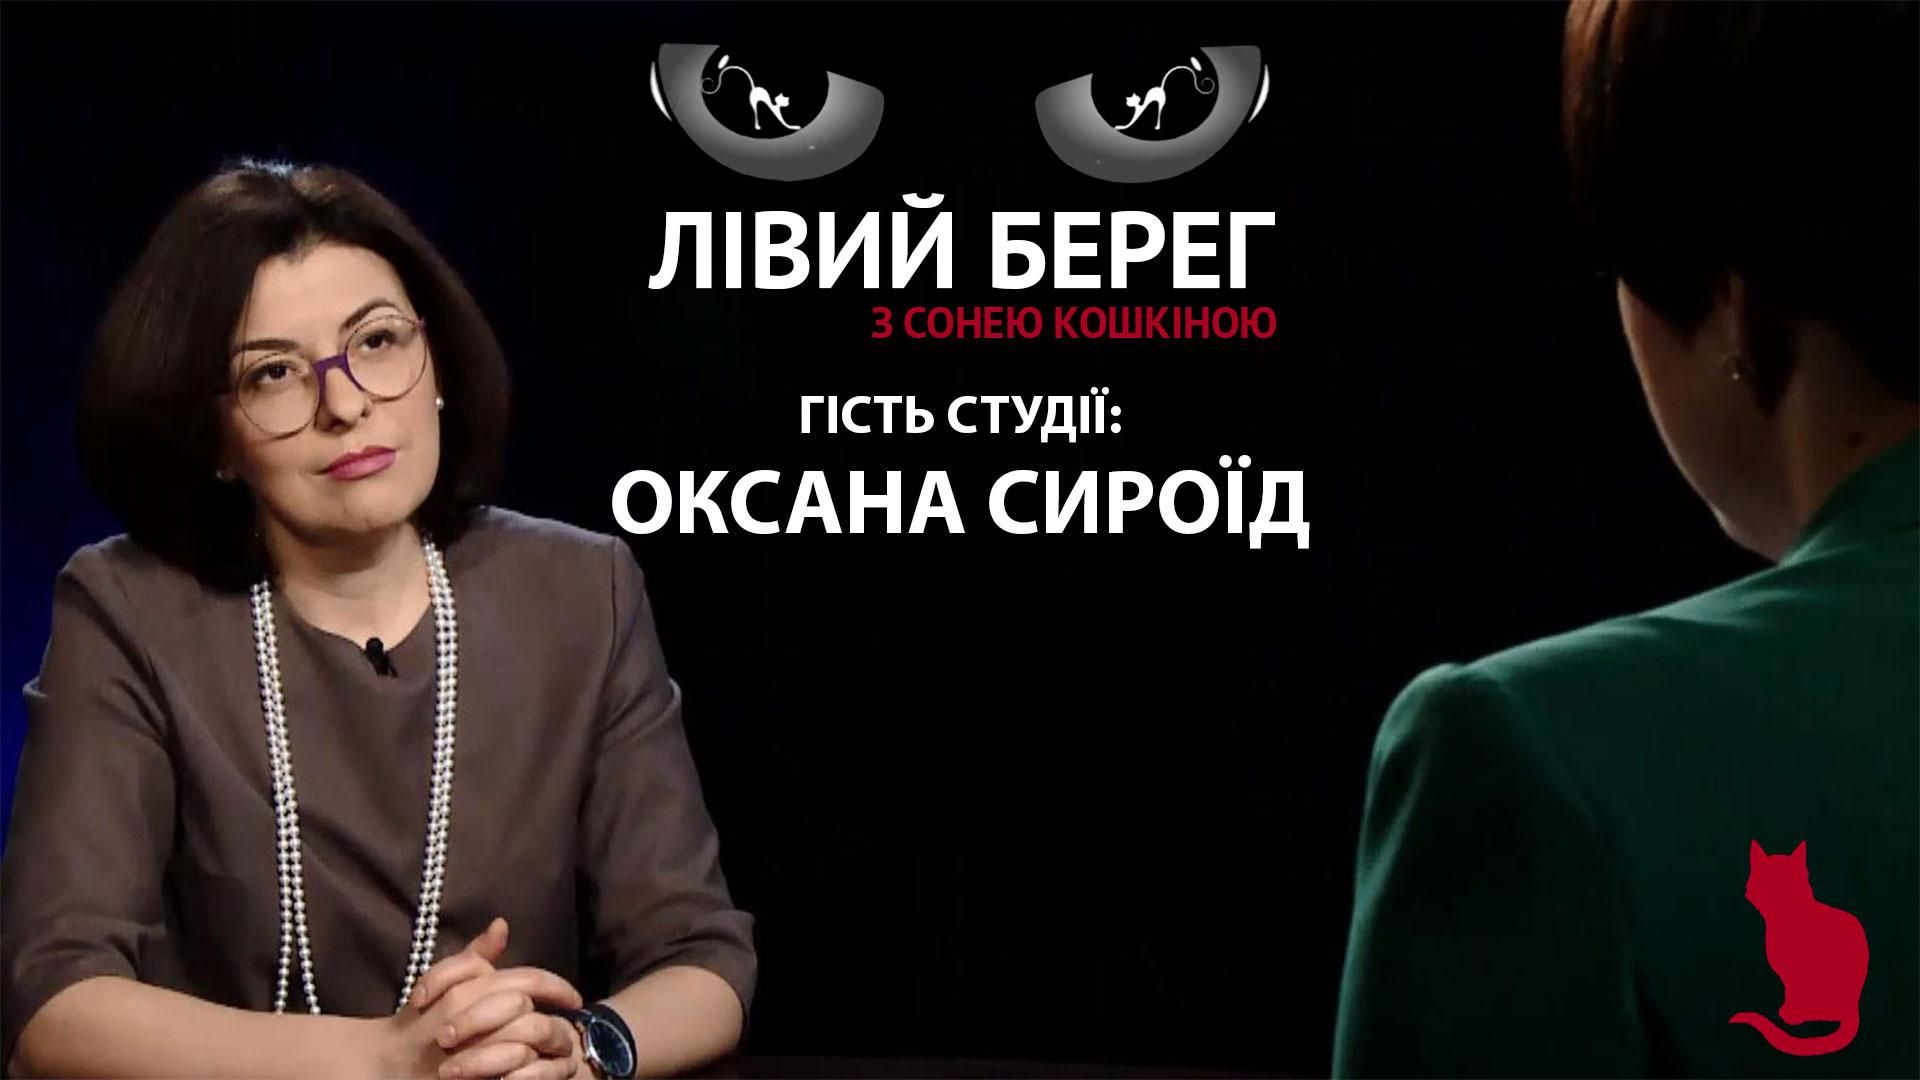 Про найбільшу загрозу на Донбасі та про роботу Верховної Ради, – ґрунтовне інтерв’ю з Сироїд